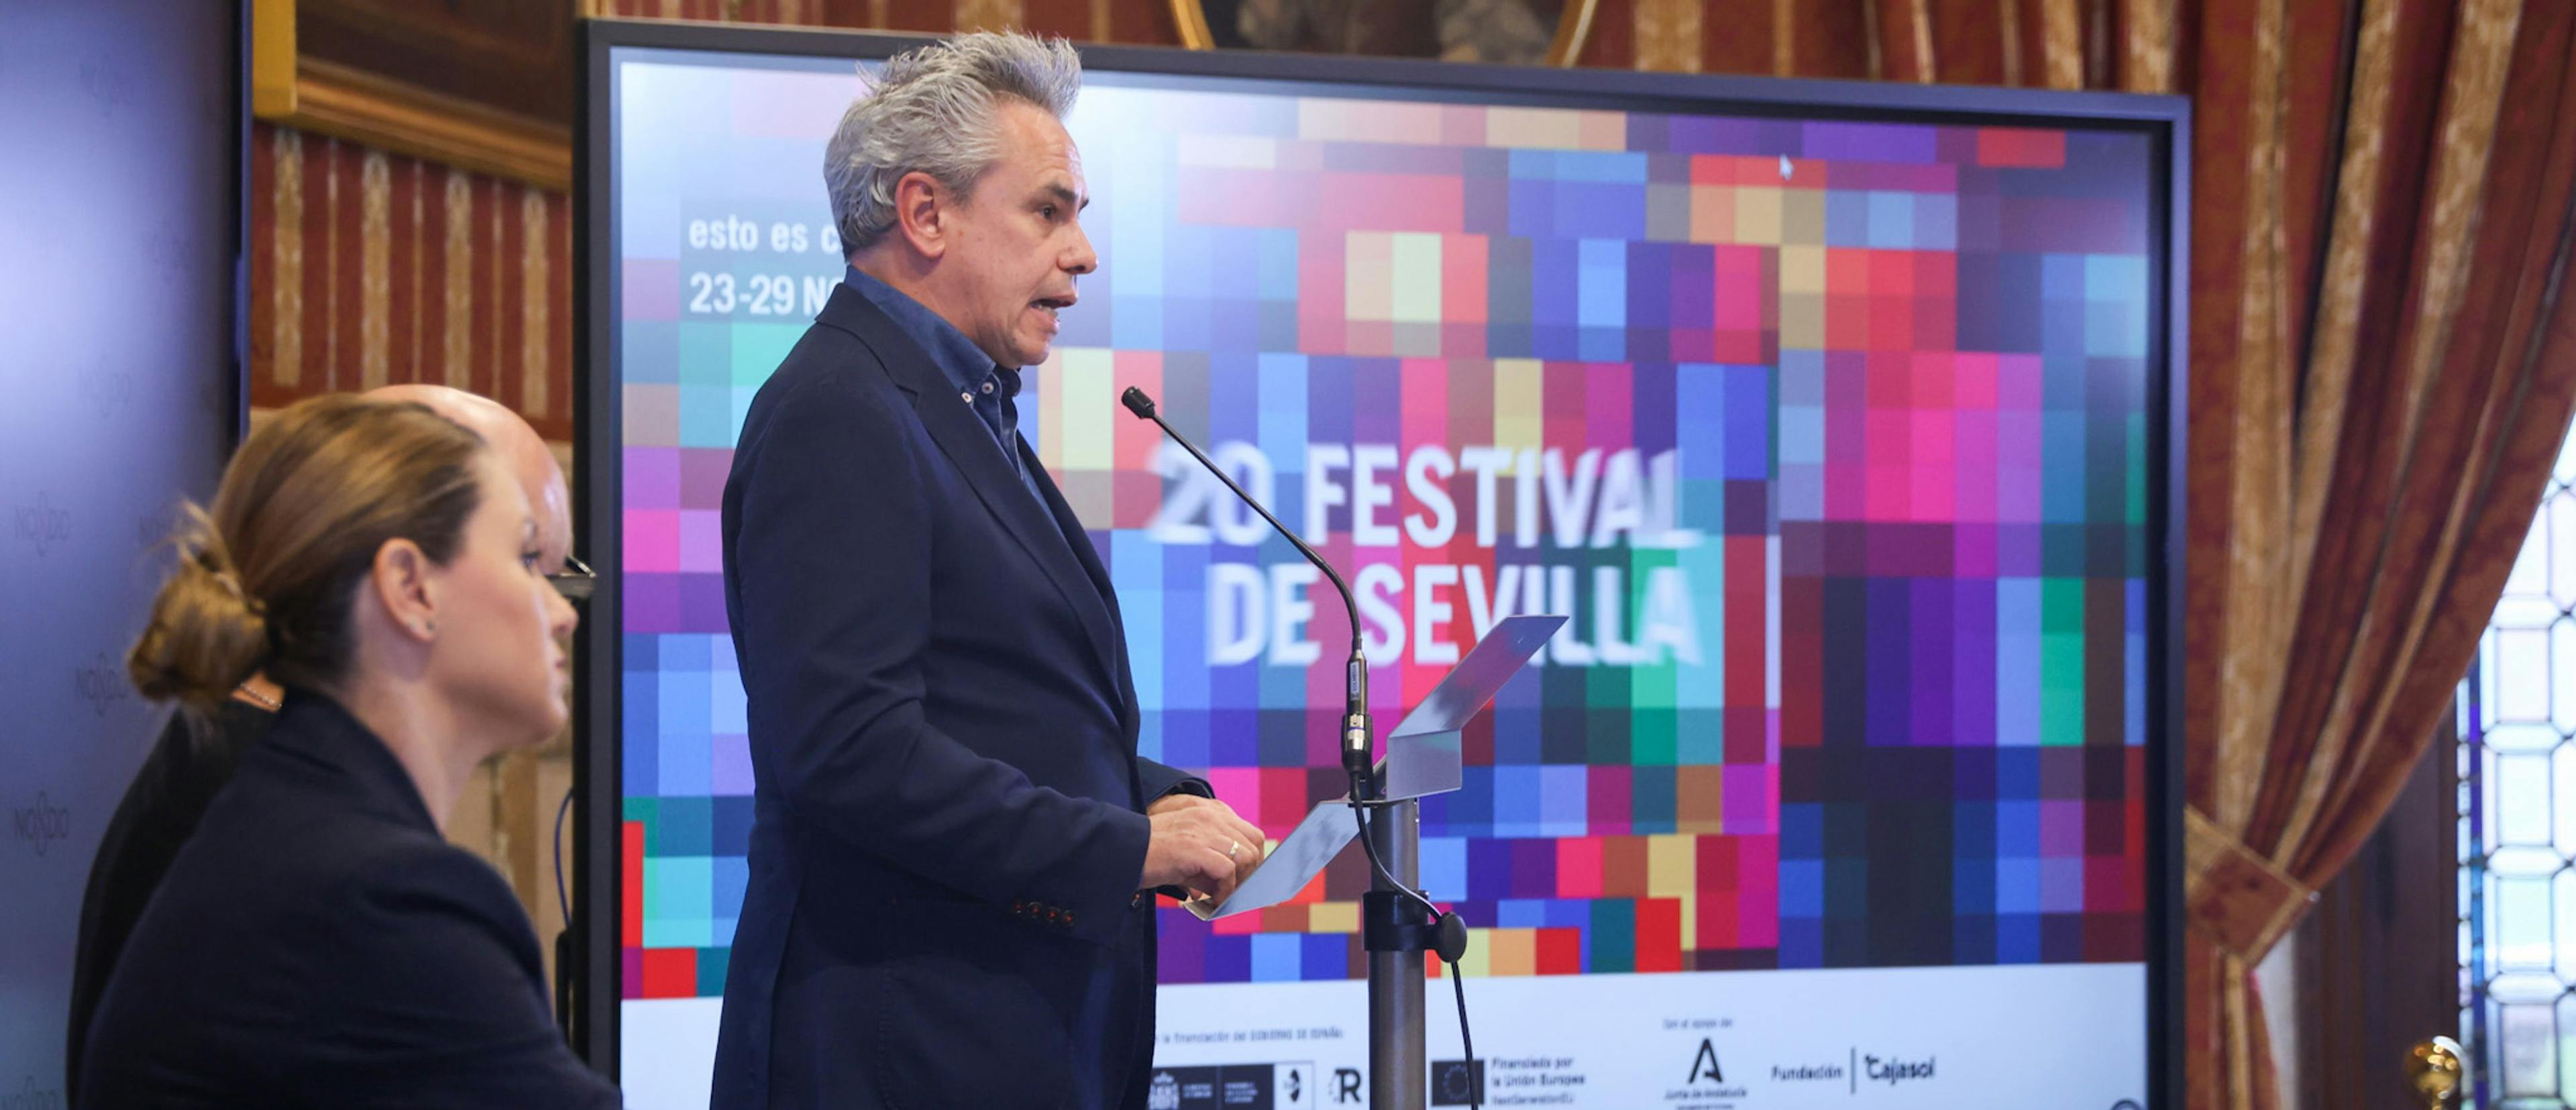 Manuel Cristóbal, coordinador del Festival de Sevilla, durante la presentación de la 20 edición del certamen